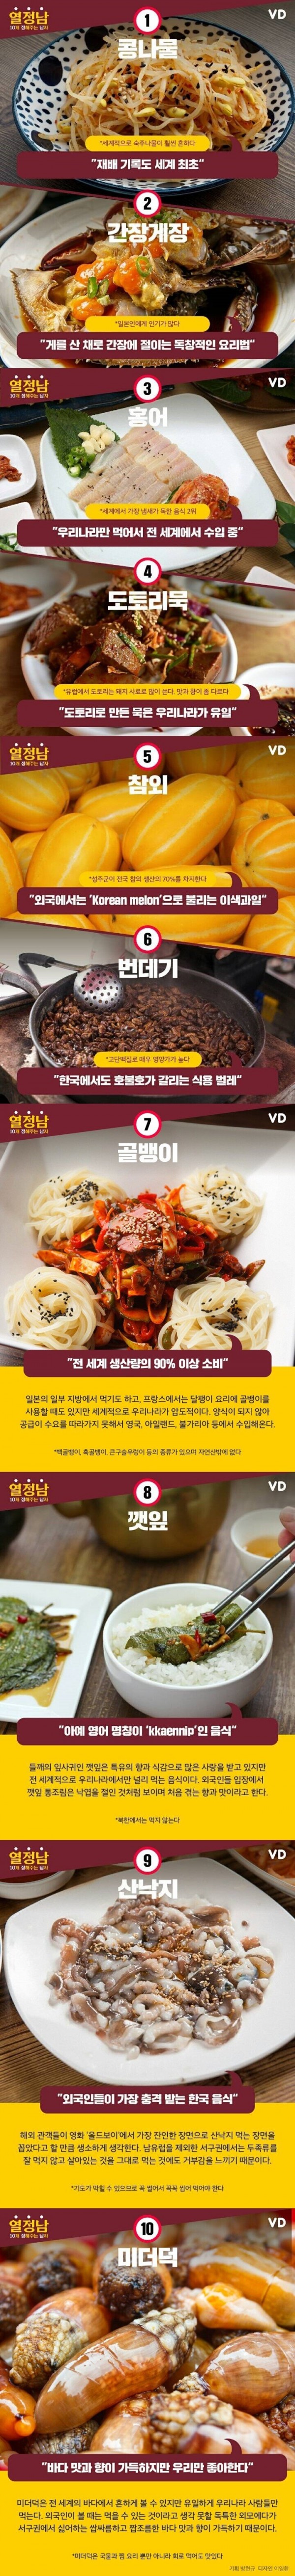 전세계 한국에서만 먹는 음식.jpg